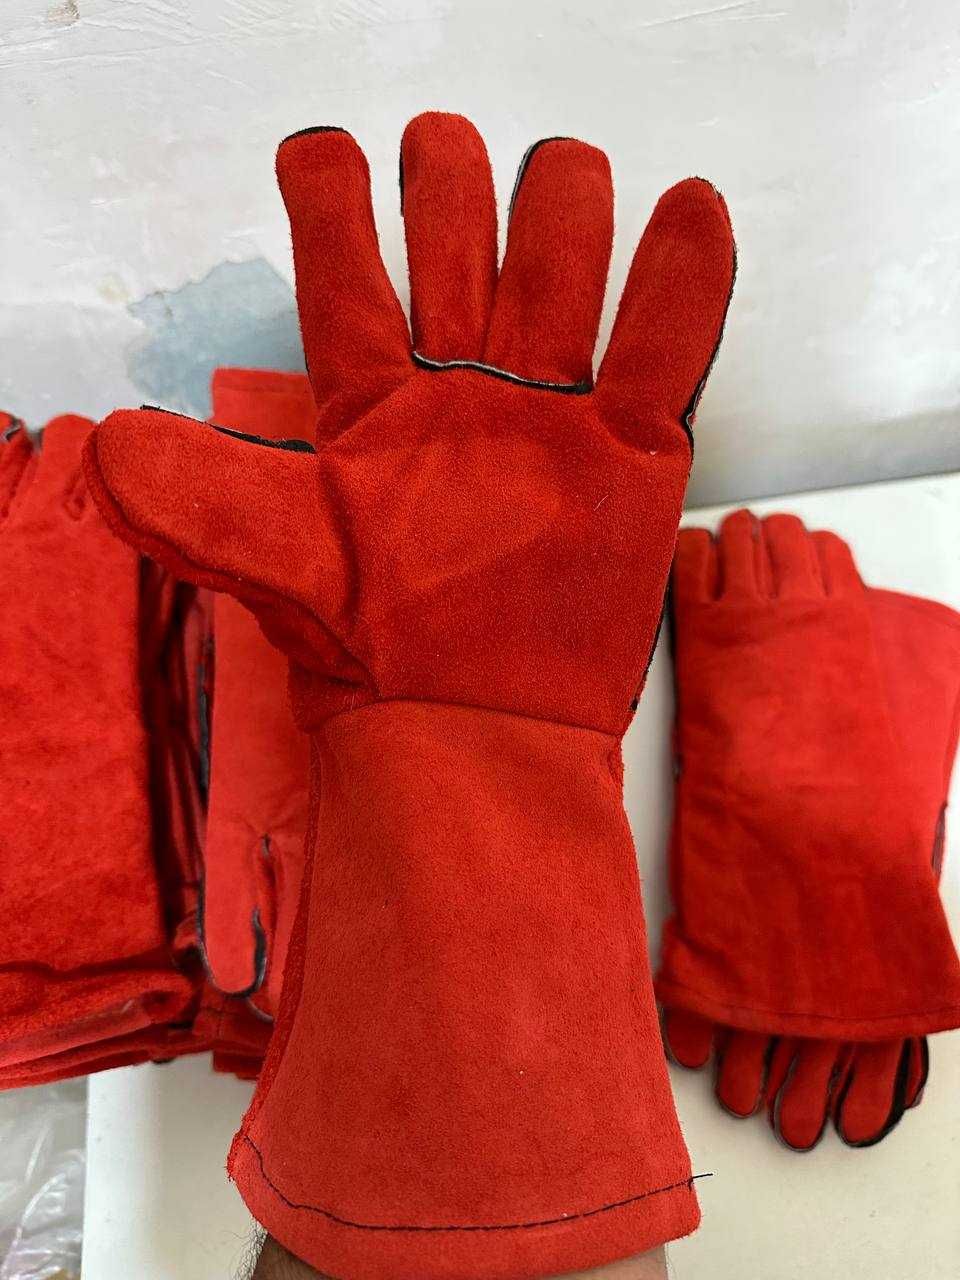 сварочные перчатки краги, (спилковые/брезентовые) Оптом и в розницу.